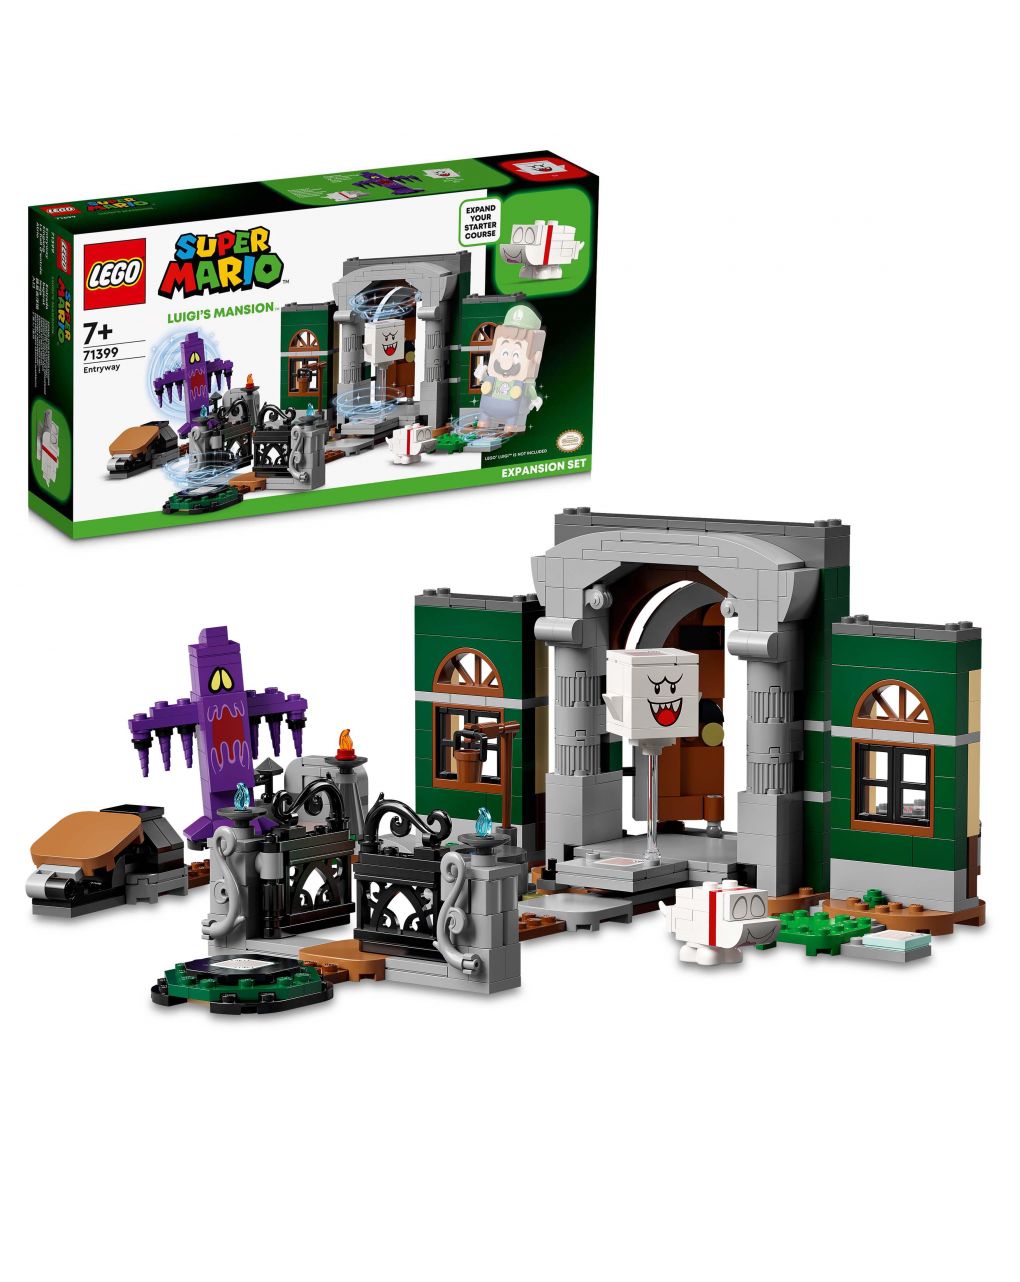 Lego super mario - atrio di luigi’s mansion™ - pack di espansione - 71399 - LEGO